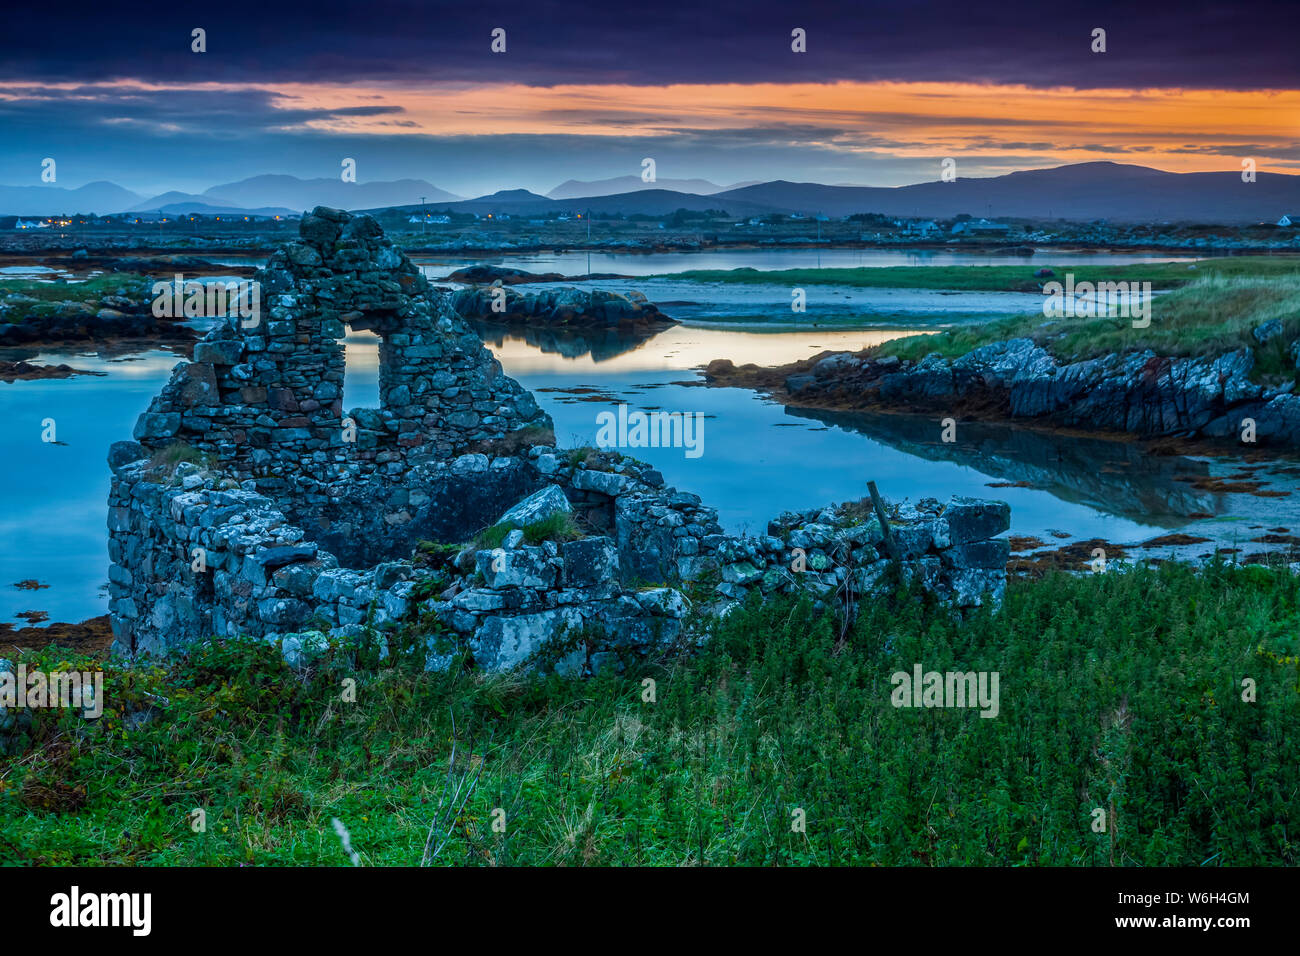 Ruines d'un édifice en pierre au coucher du soleil sur l'île sauvage de l'Atlantique Mweenish, façon ; l'Inishmore Island, comté de Galway, Irlande Banque D'Images